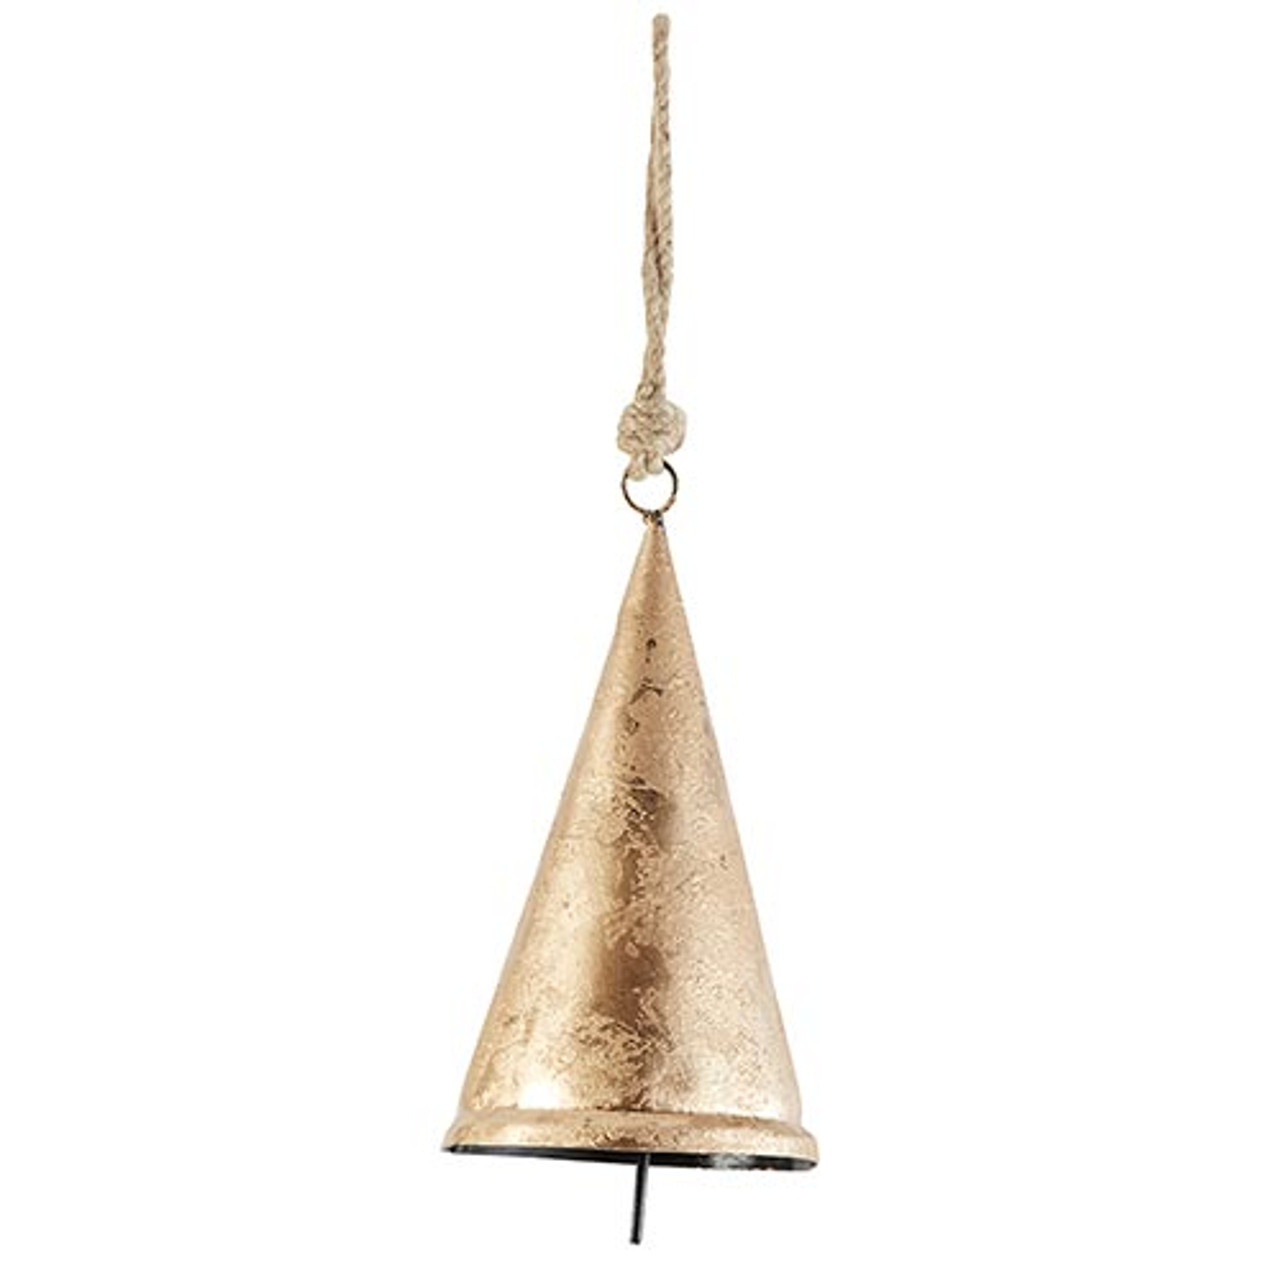 Cone Shape Large Brass Bell, Wedding Bell, Altar Bell, Home Garden Dec –  IndiBellStudio